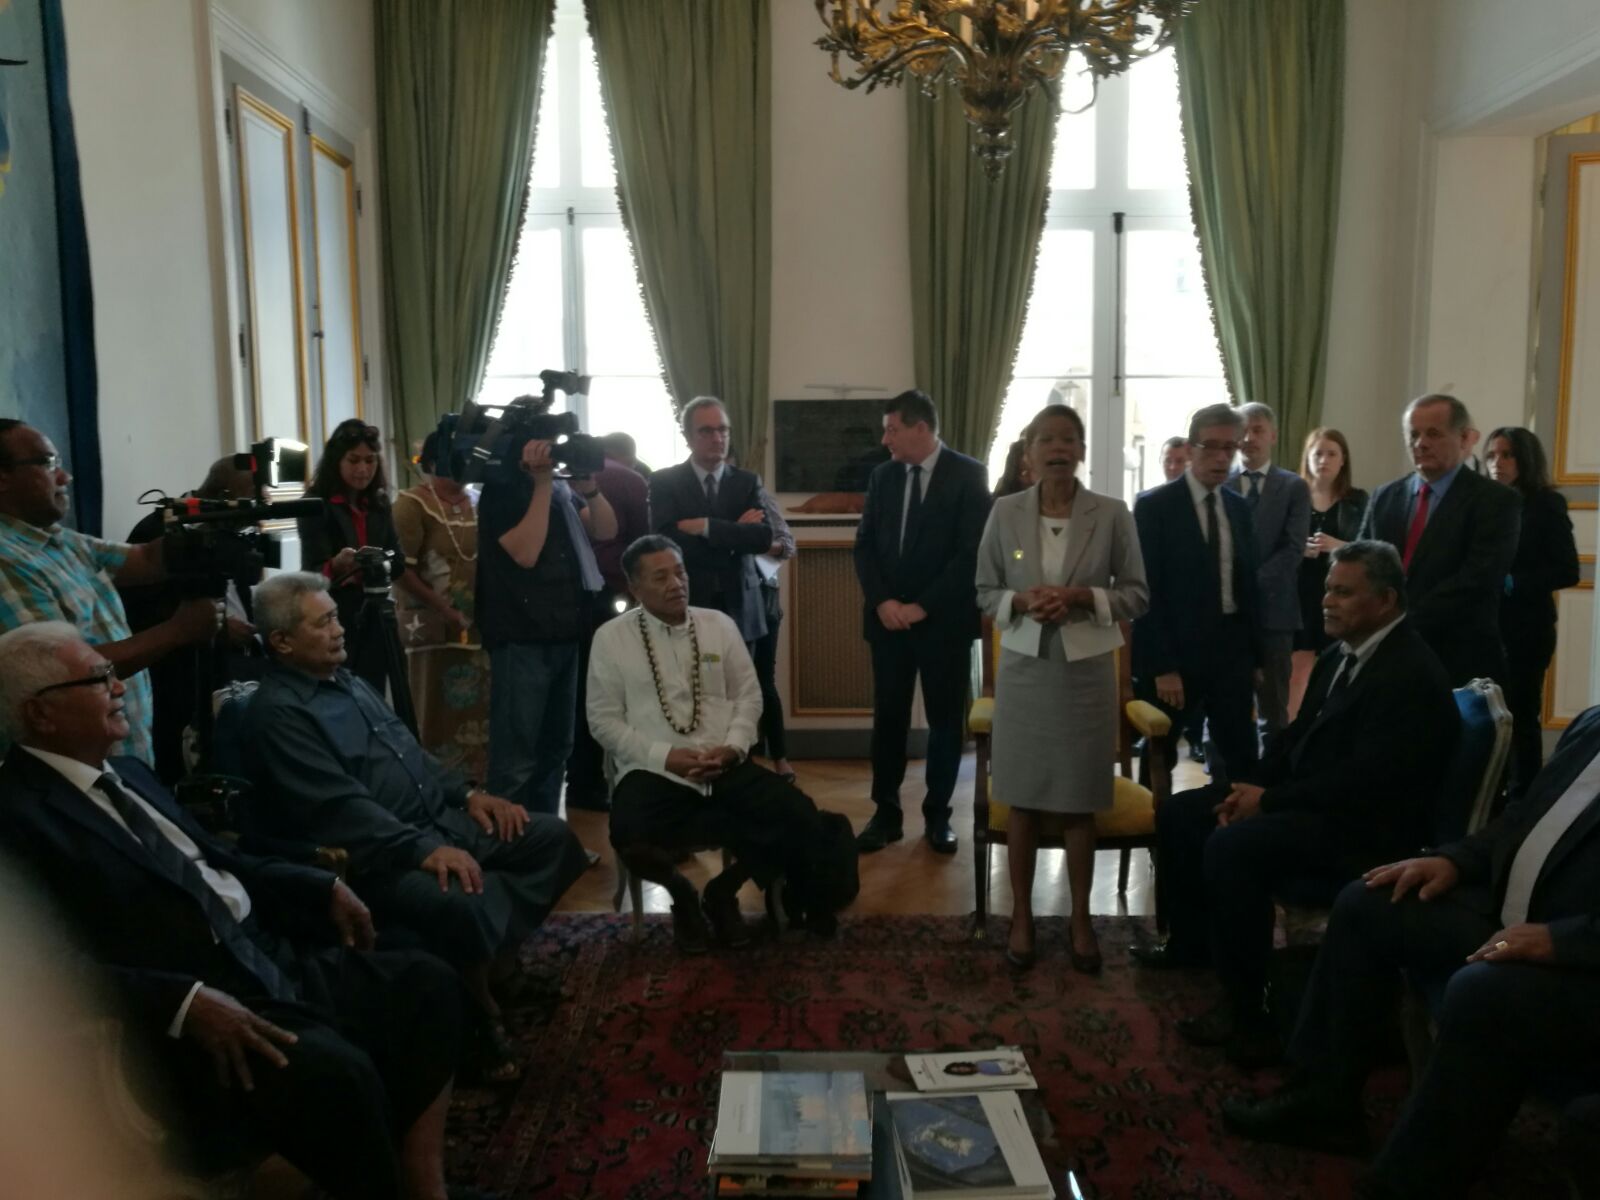 Visite des rois de Wallis-et-Futuna à Paris: L’évolution statutaire de Wallis-Et-Futuna et le développement économique comme axes majeurs des réunions de travail